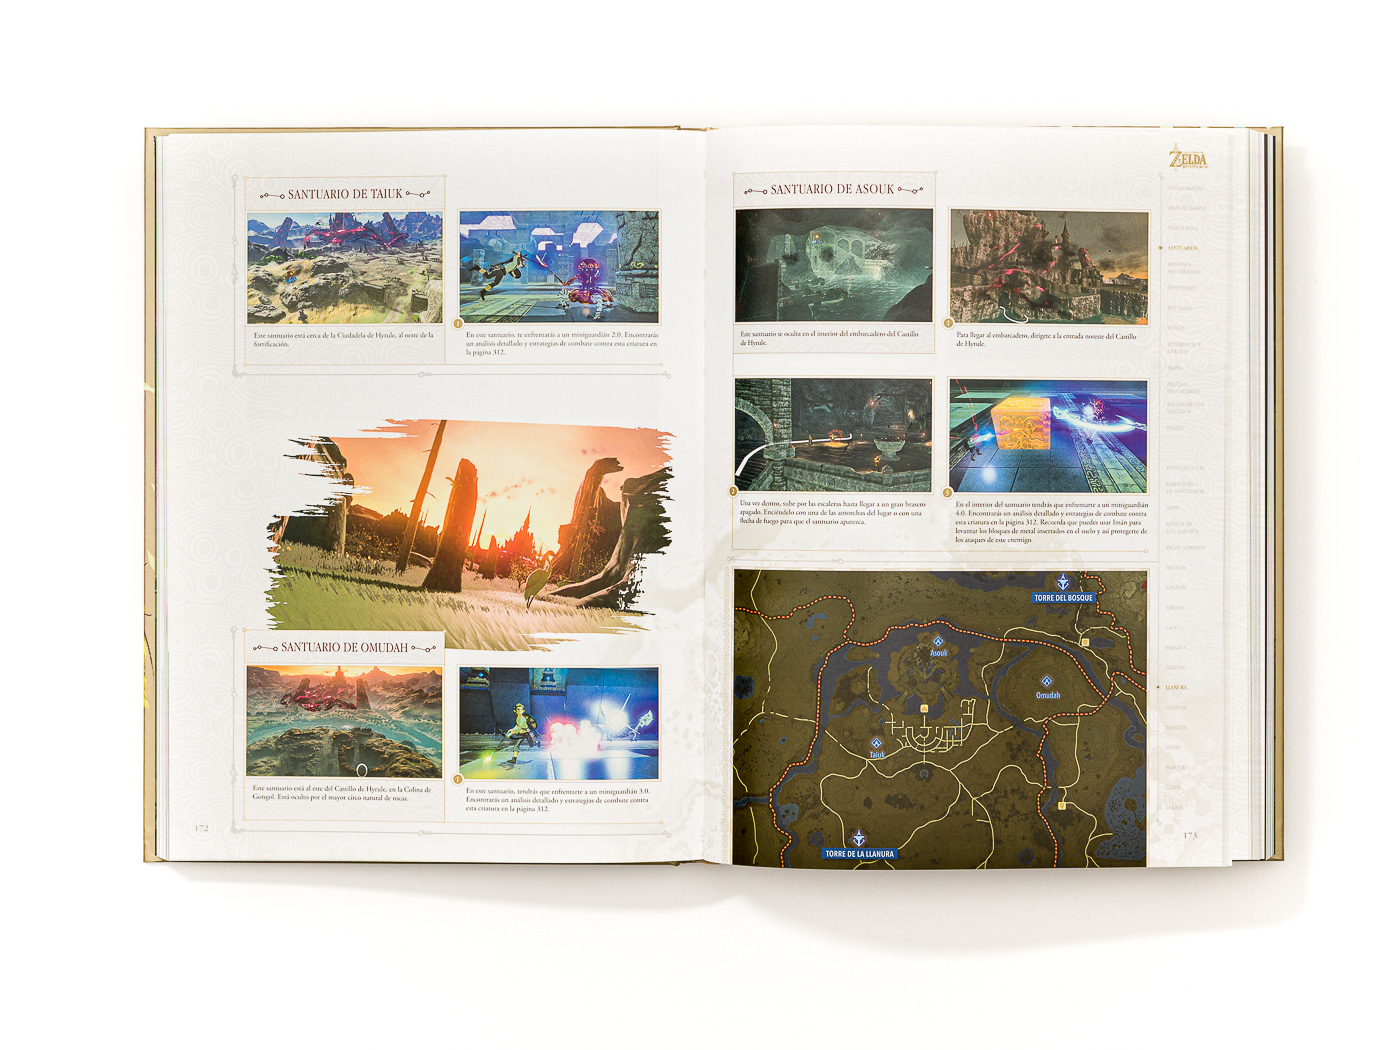 Descarga gratis la guía del explorador de Zelda: Breath of the Wild y  quédatela para siempre